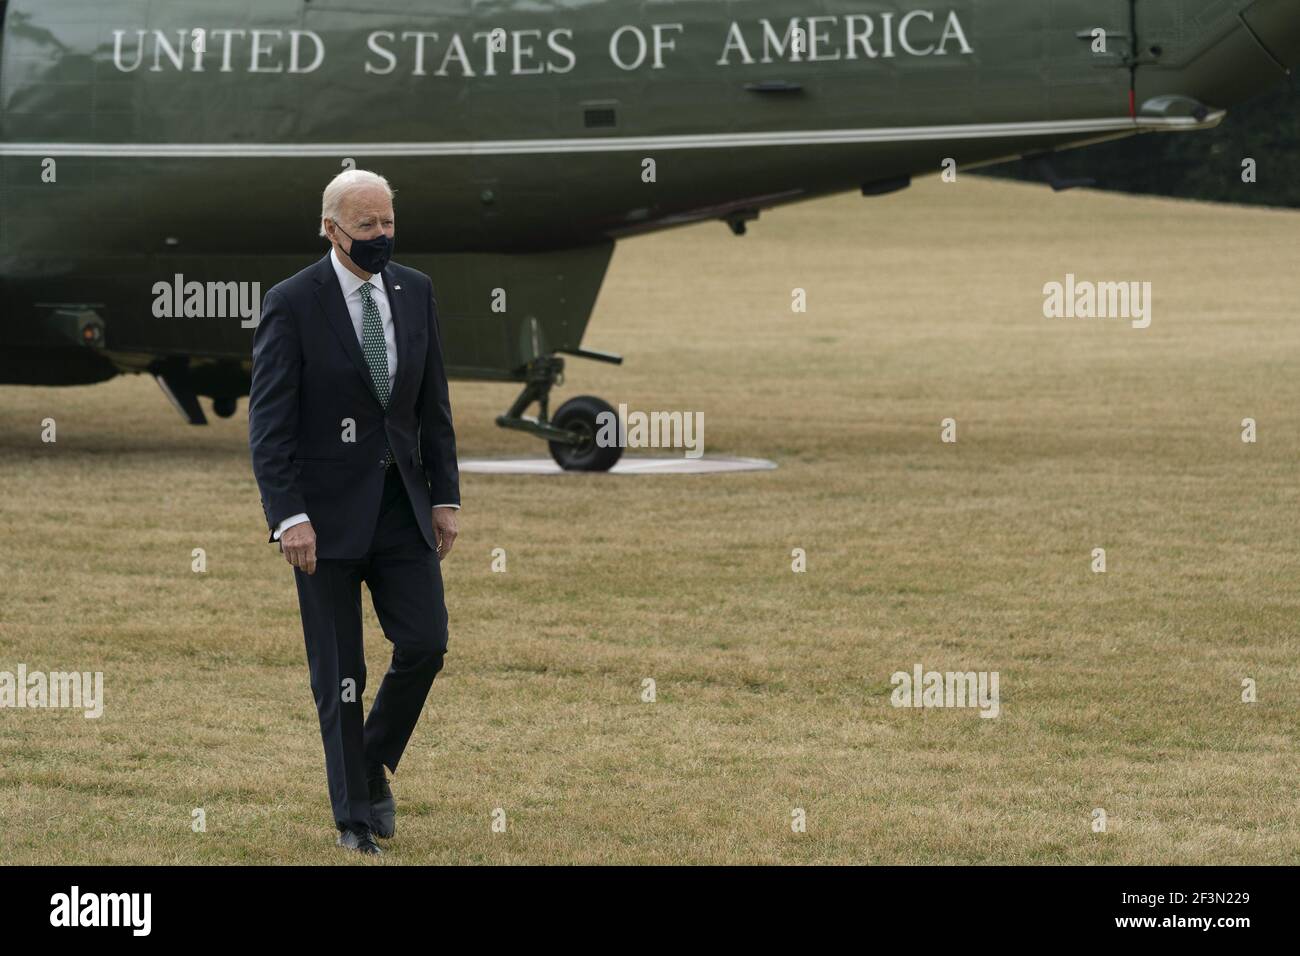 Washington, États-Unis. 17 mars 2021. Le président des États-Unis Joe Biden revient à la Maison Blanche à Washington, DC, le mardi 17 mars 2021, Après avoir passé la nuit à Wilmington, Delaware. Photo de Chris Kleponis/UPI crédit: UPI/Alay Live News Banque D'Images